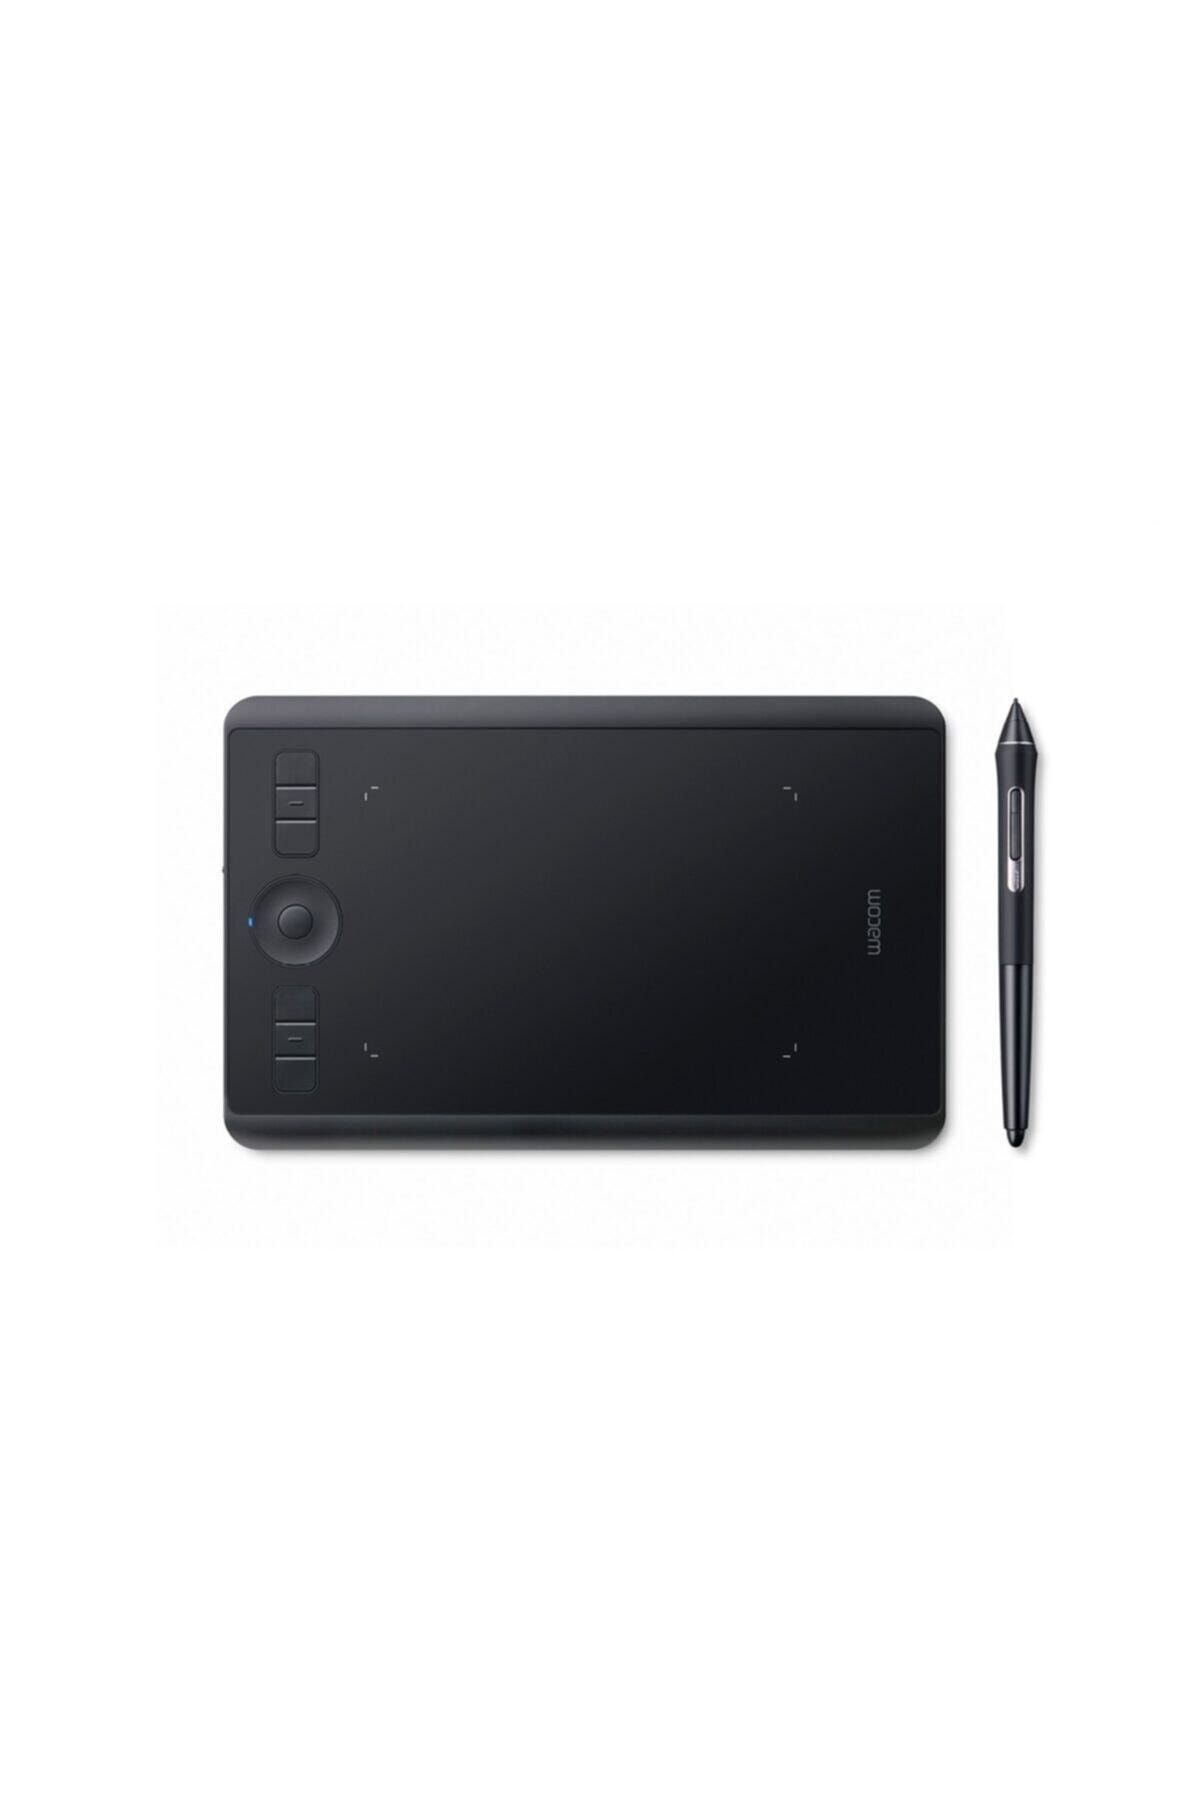 Wacom Pth-460 Bluetooth Intuous Pro Small Grafik Tablet